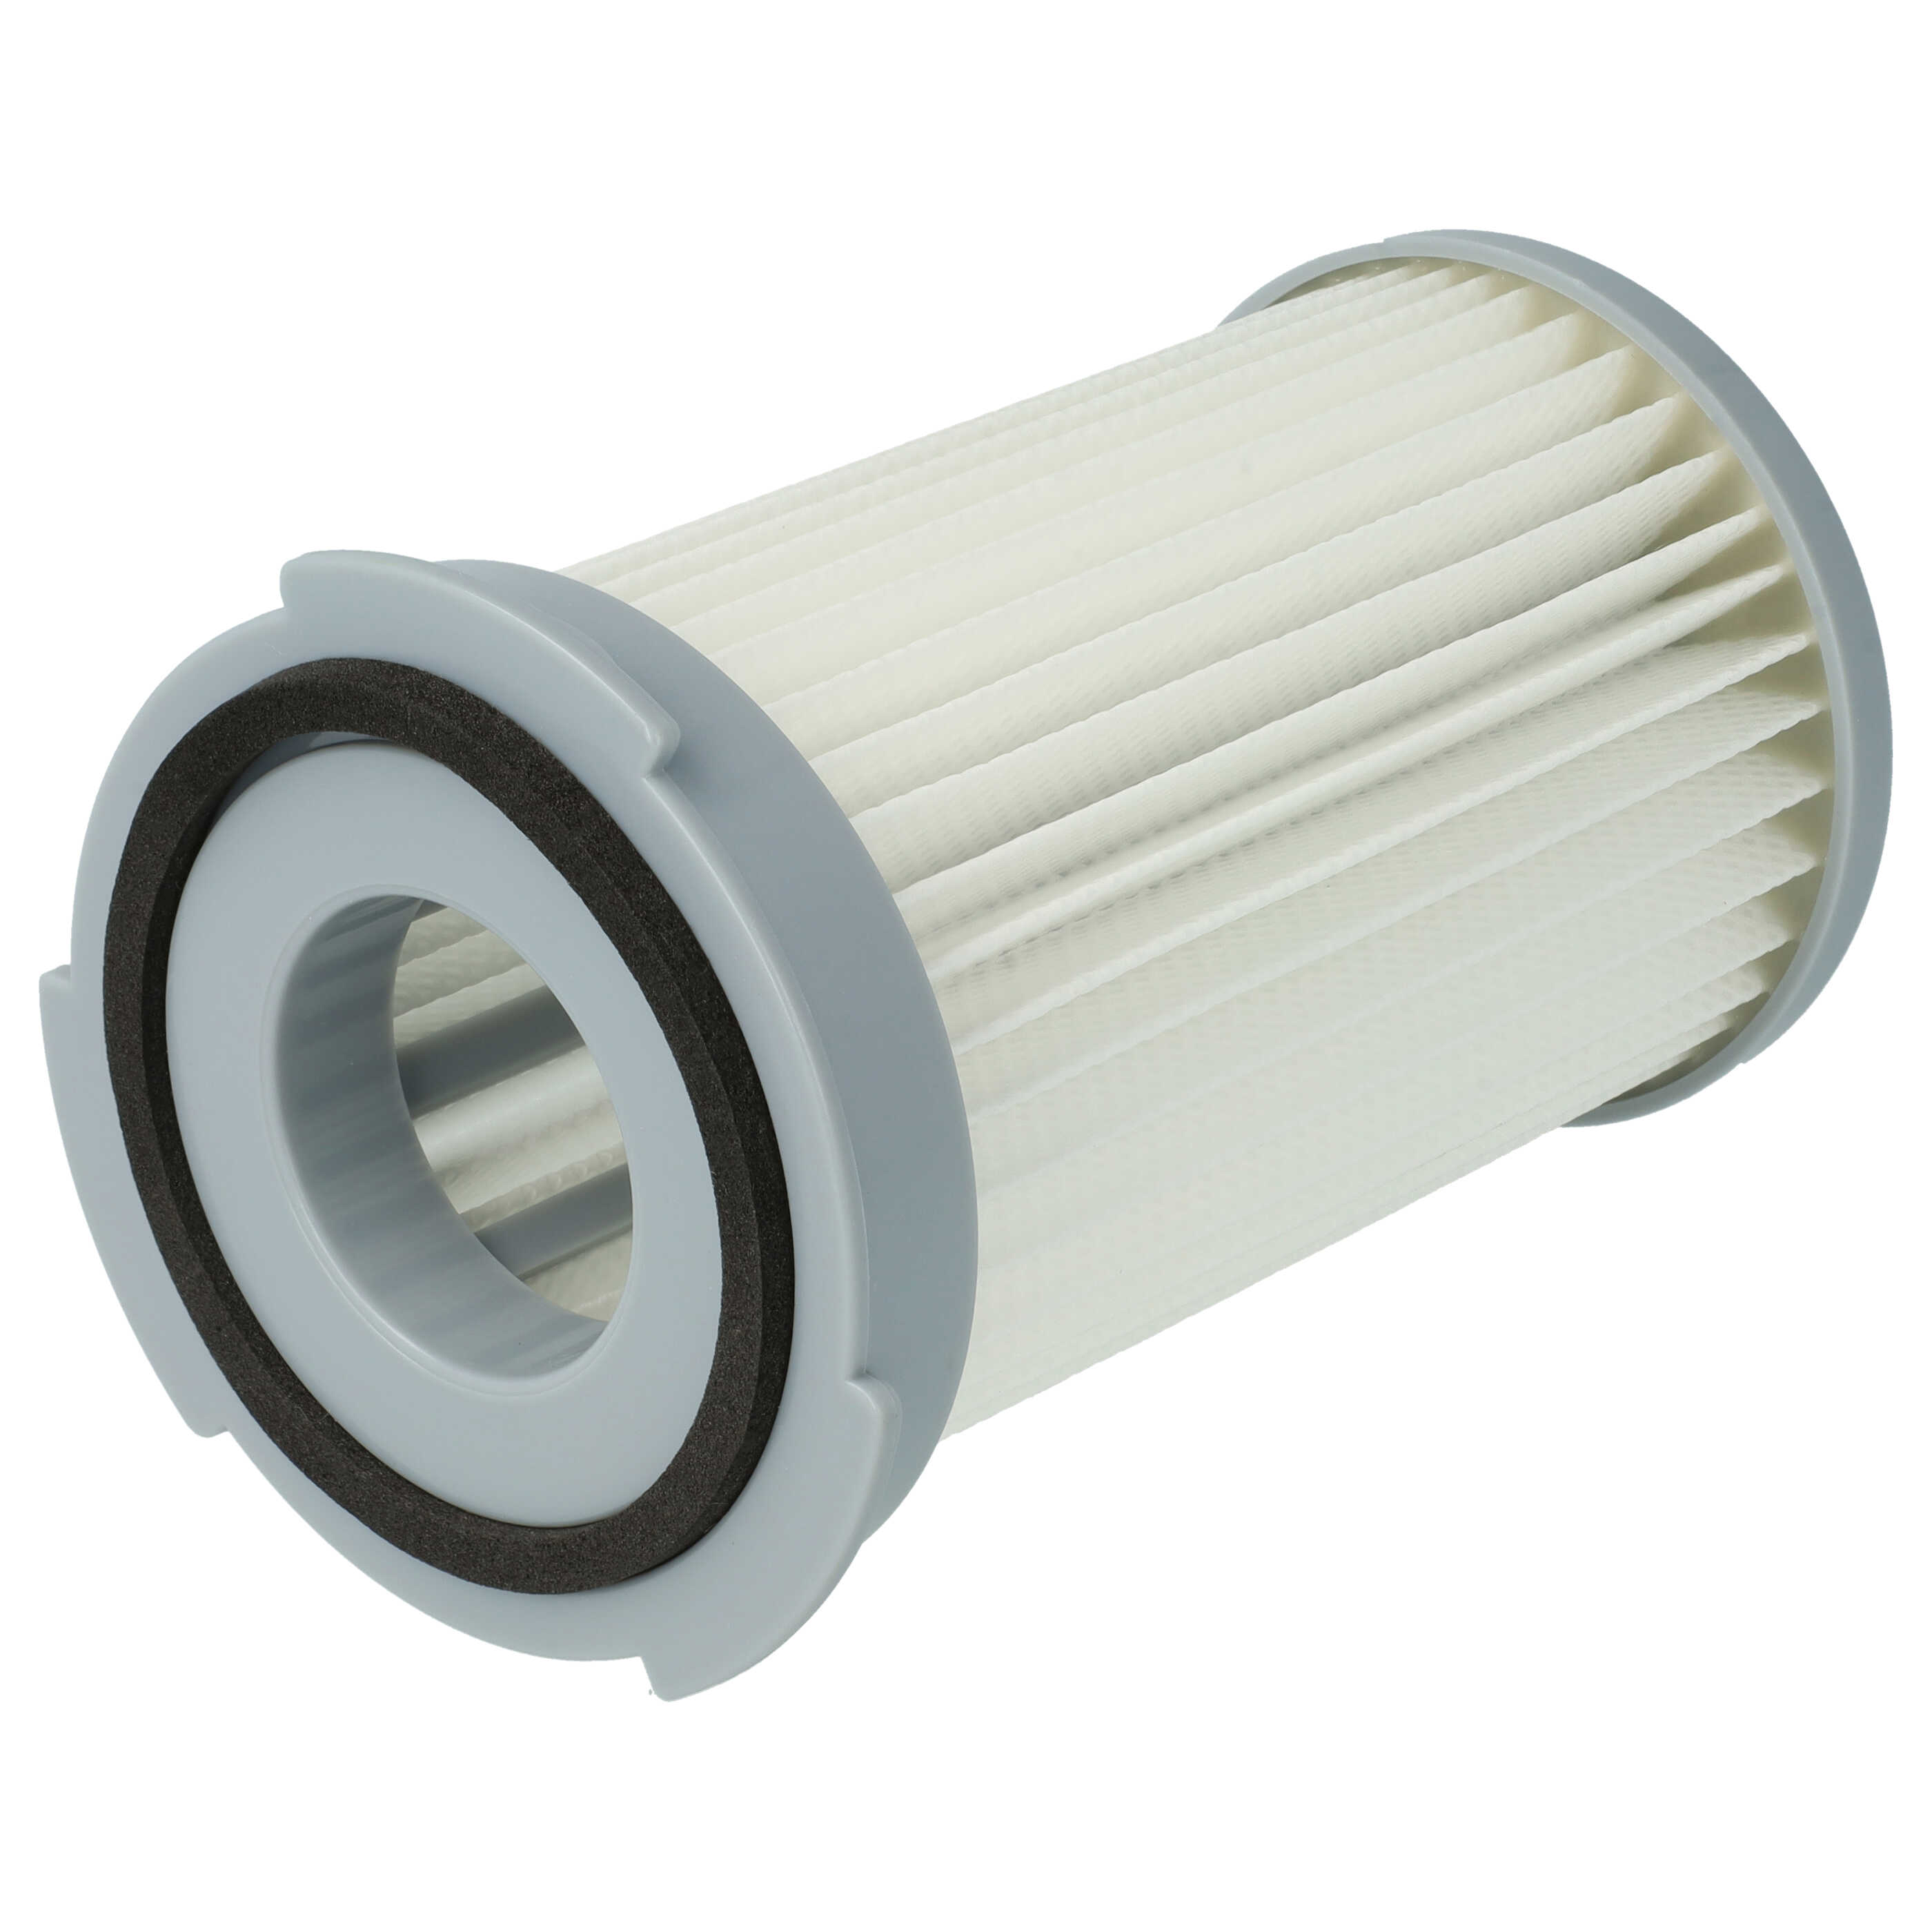 Filtro sostituisce Electrolux 9001966051 per aspirapolvere - filtro HEPA, bianco / grigio